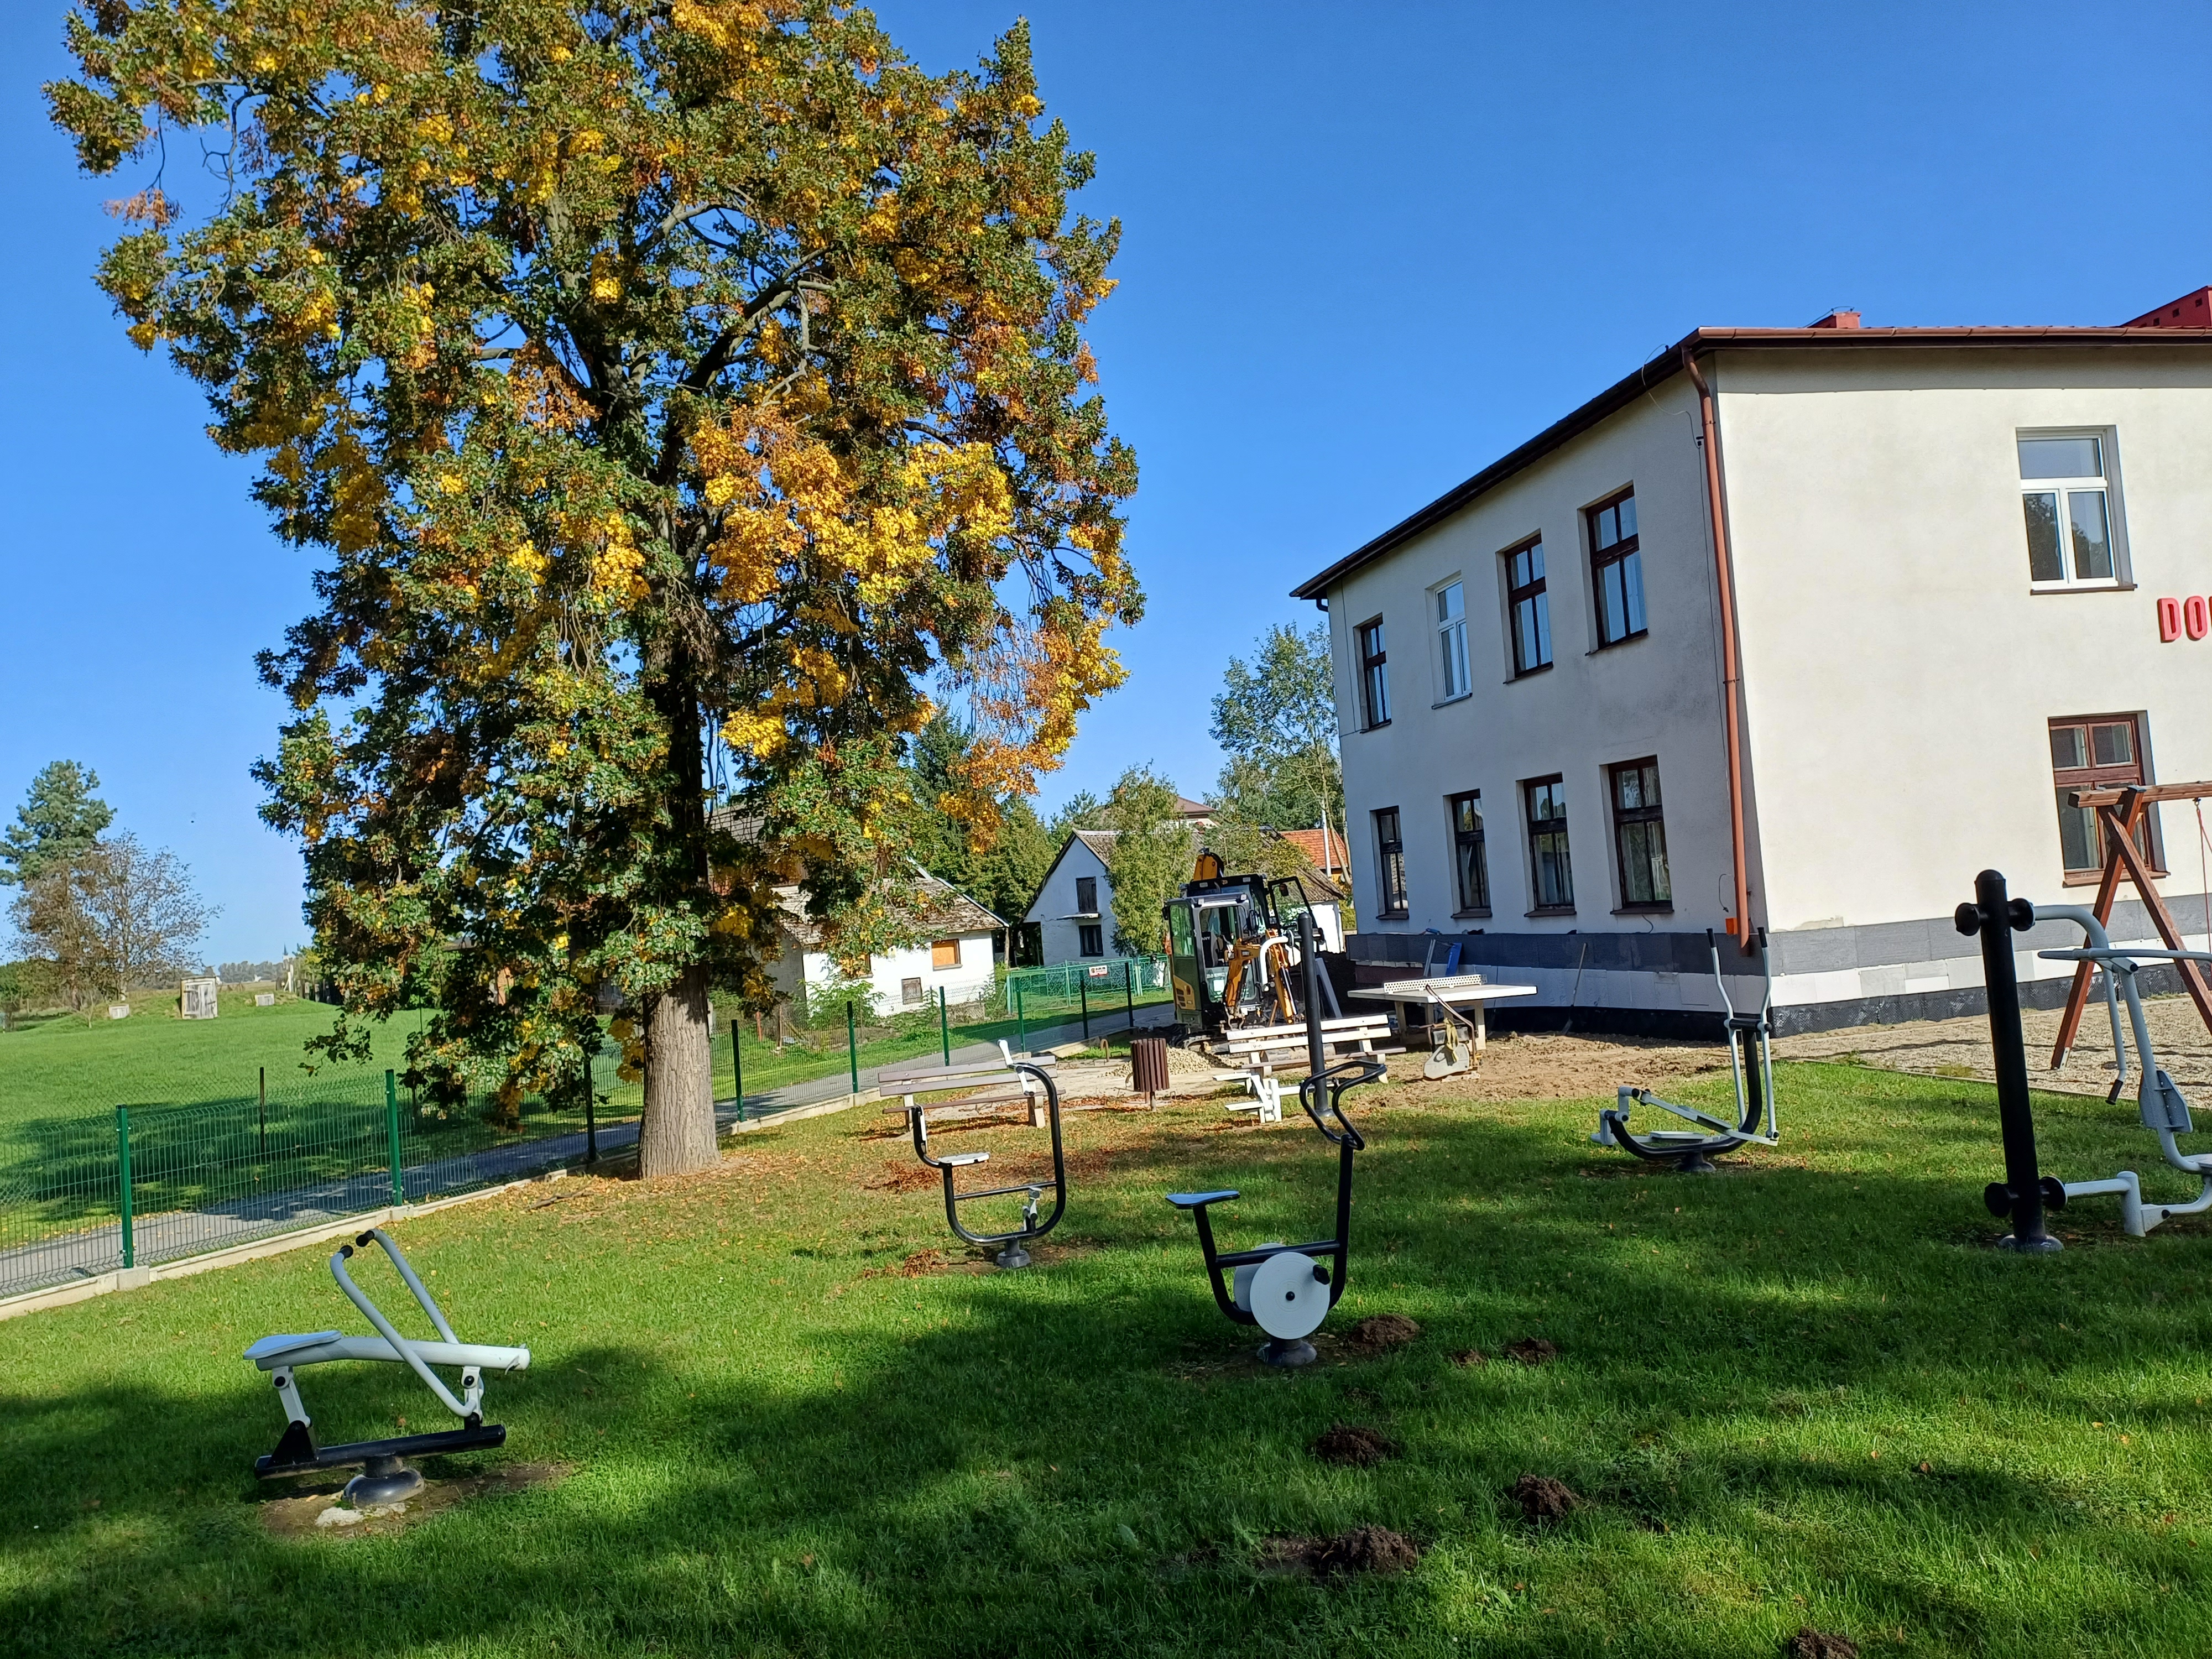 Zdjęcie przedstawia fragment budynku, z lewej strony rośnie drzewo. Przed budynkiem znajdują się sprzęty do ćwiczeń plenerowych.